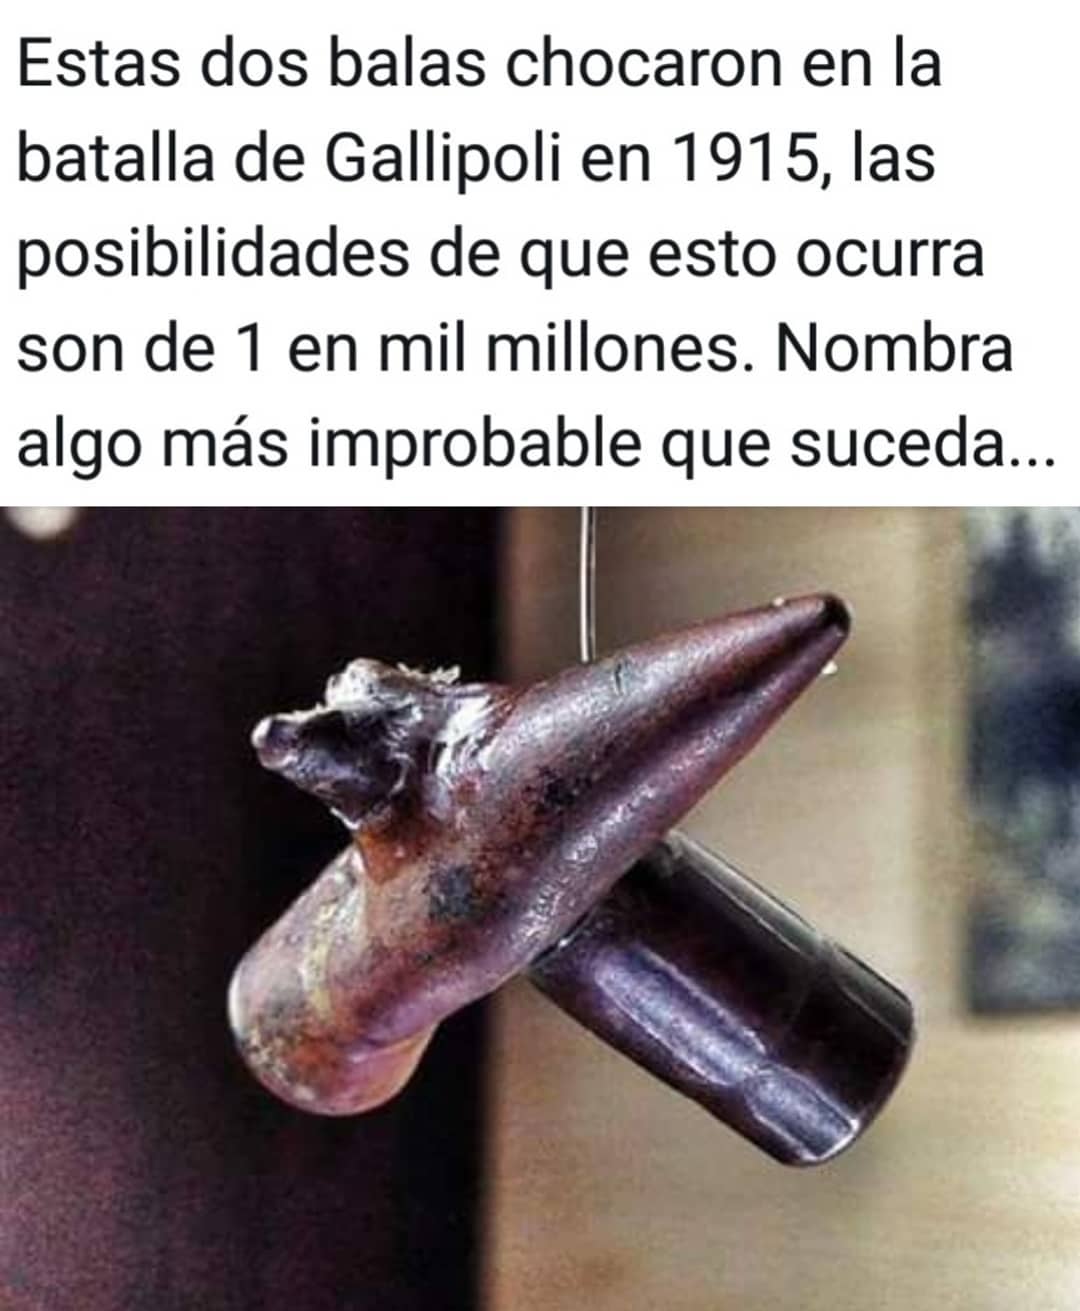 Estas dos balas chocaron en la batalla de Gallipoli en 1915, las posibilidades de que esto ocurra son de 1 en mil millones. Nombra algo más improbable que suceda...